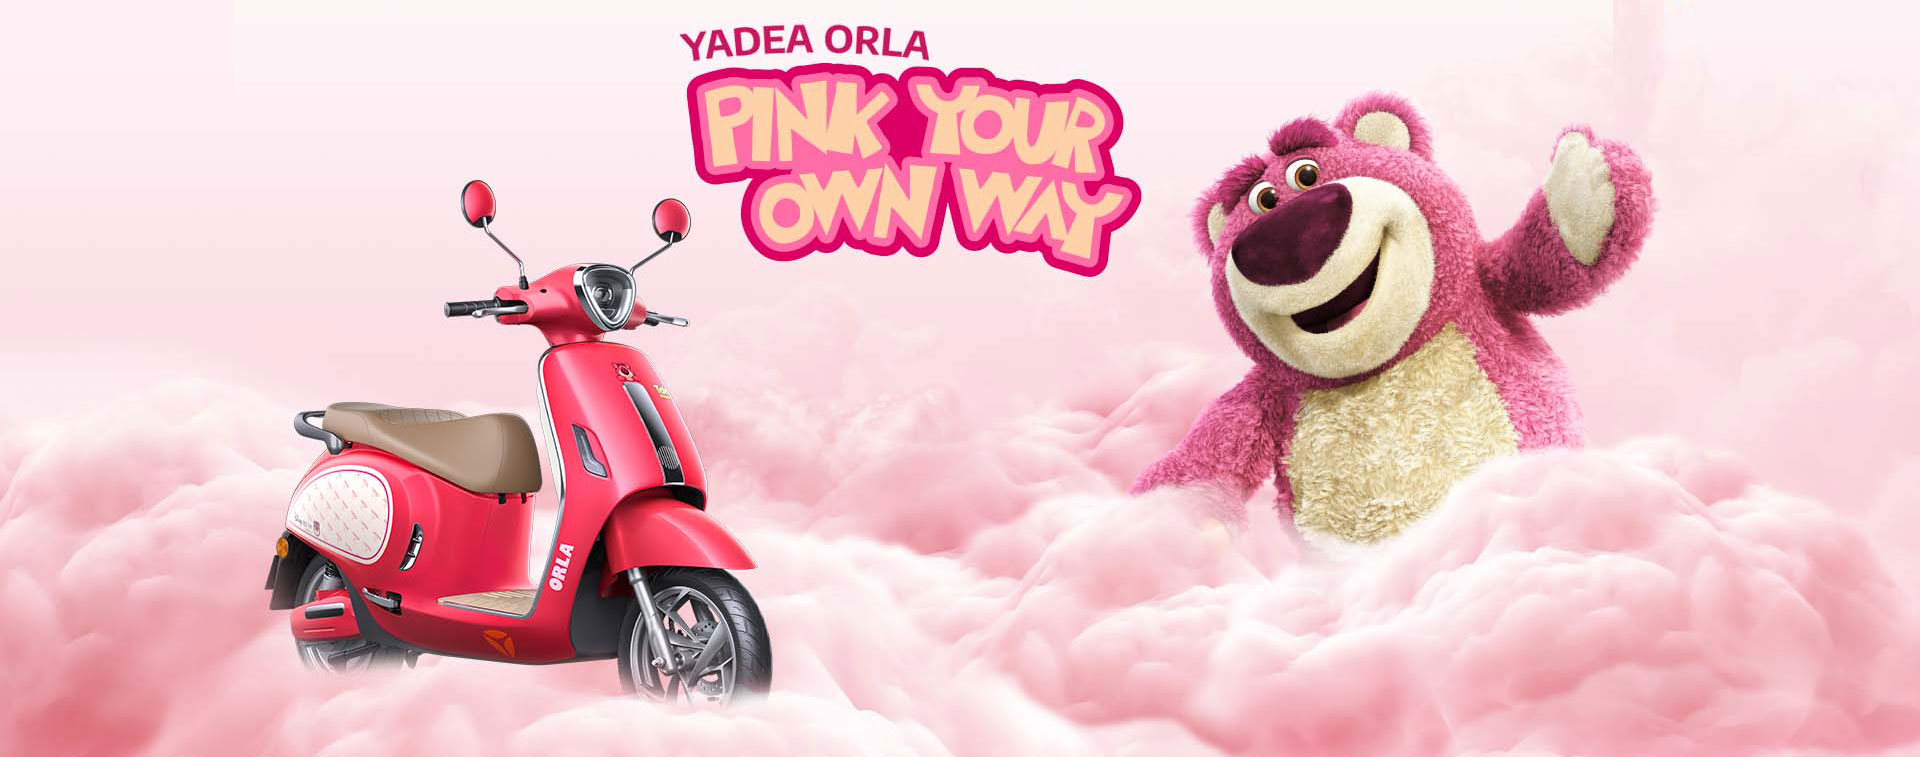 Xe máy điện Yadea ORLA Pink Your Own Way 